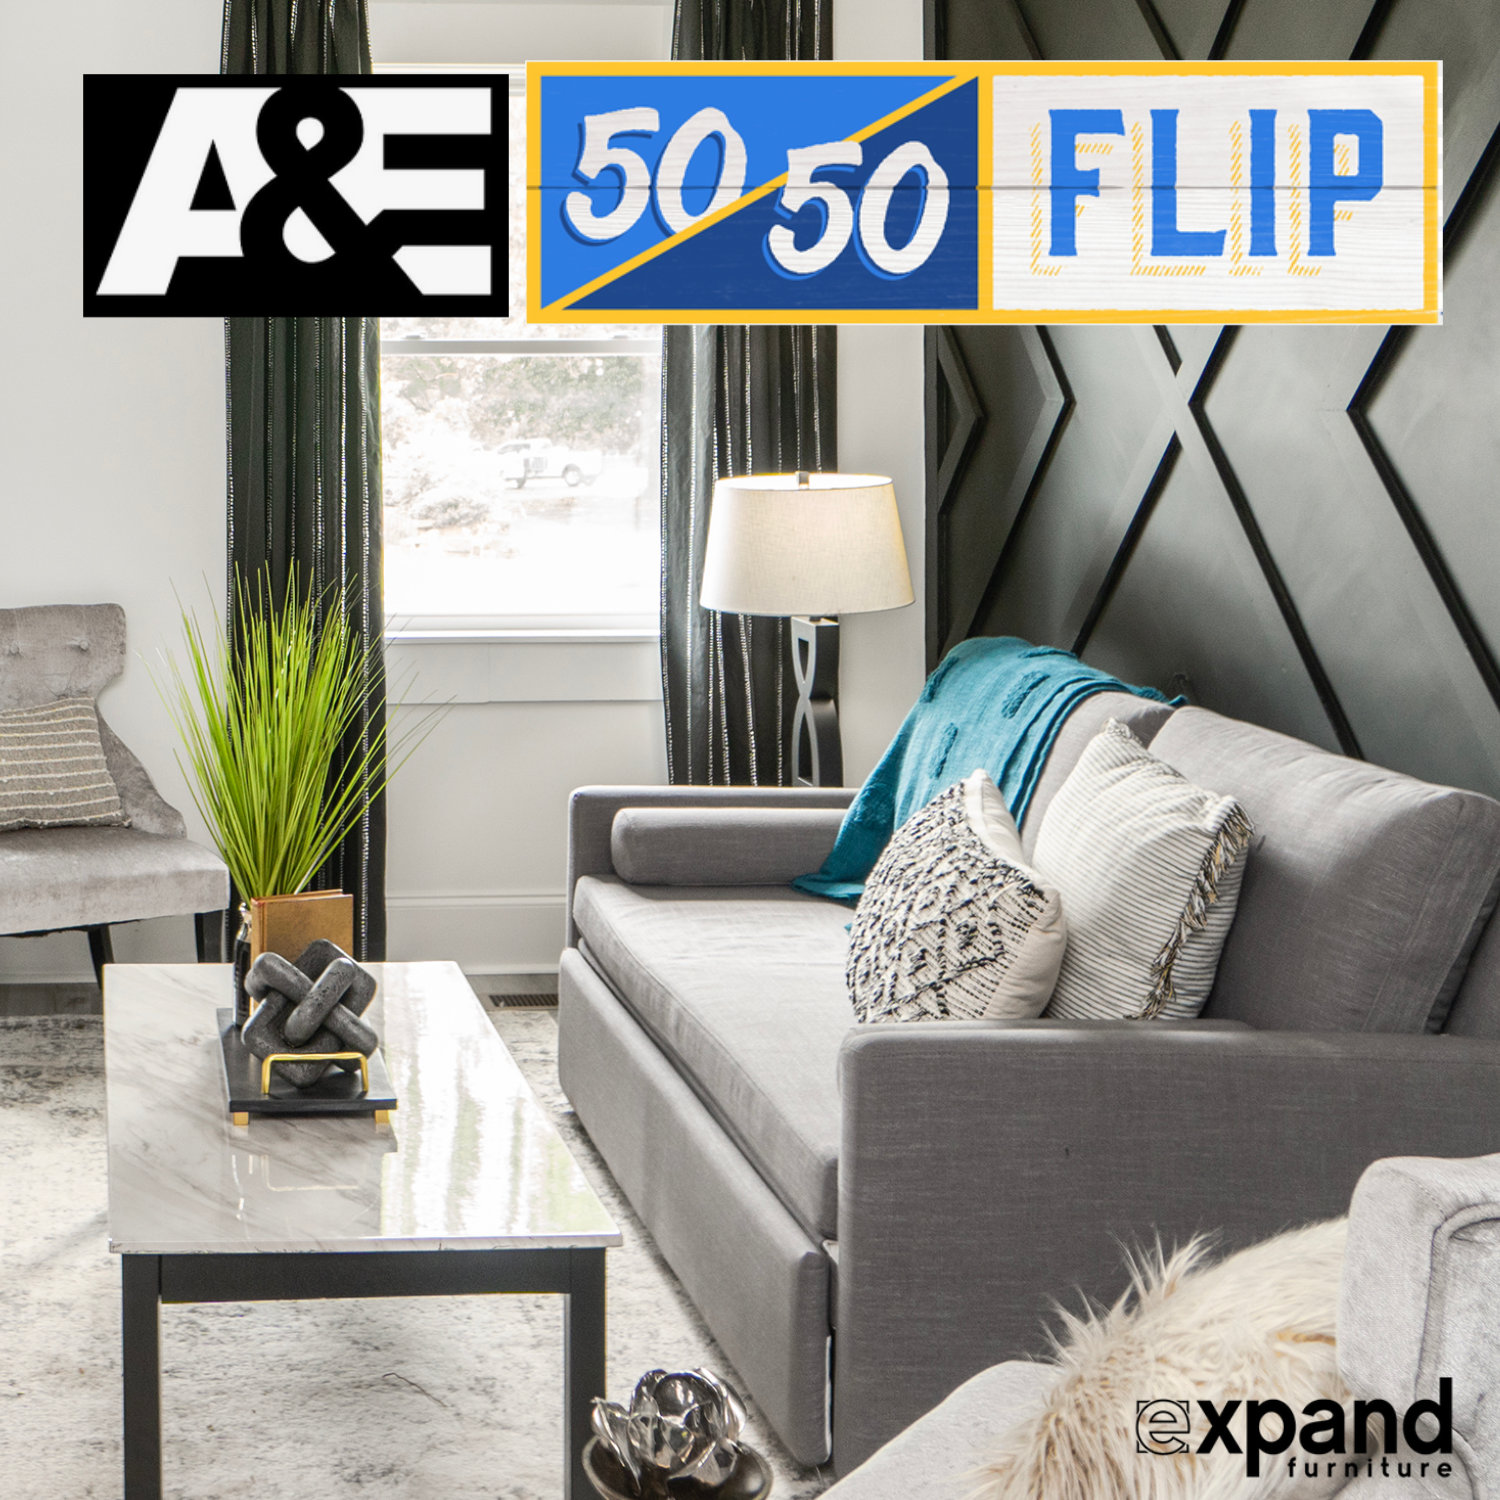 A&E 50 50 flip sofa bed and bunk bed room